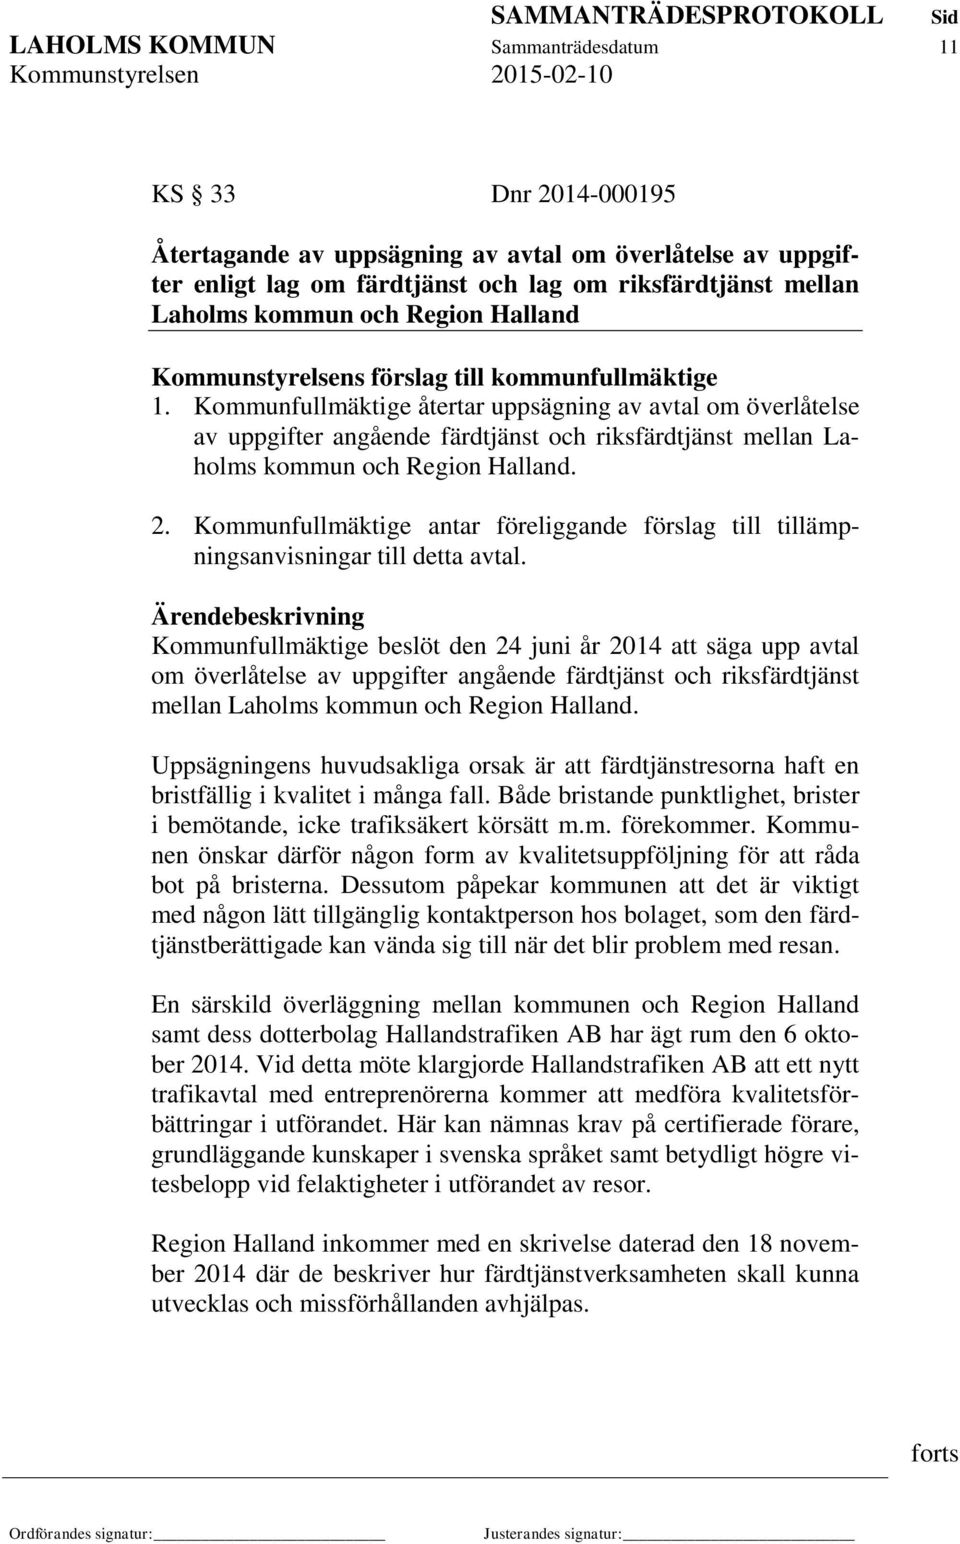 Kommunfullmäktige återtar uppsägning av avtal om överlåtelse av uppgifter angående färdtjänst och riksfärdtjänst mellan Laholms kommun och Region Halland. 2.